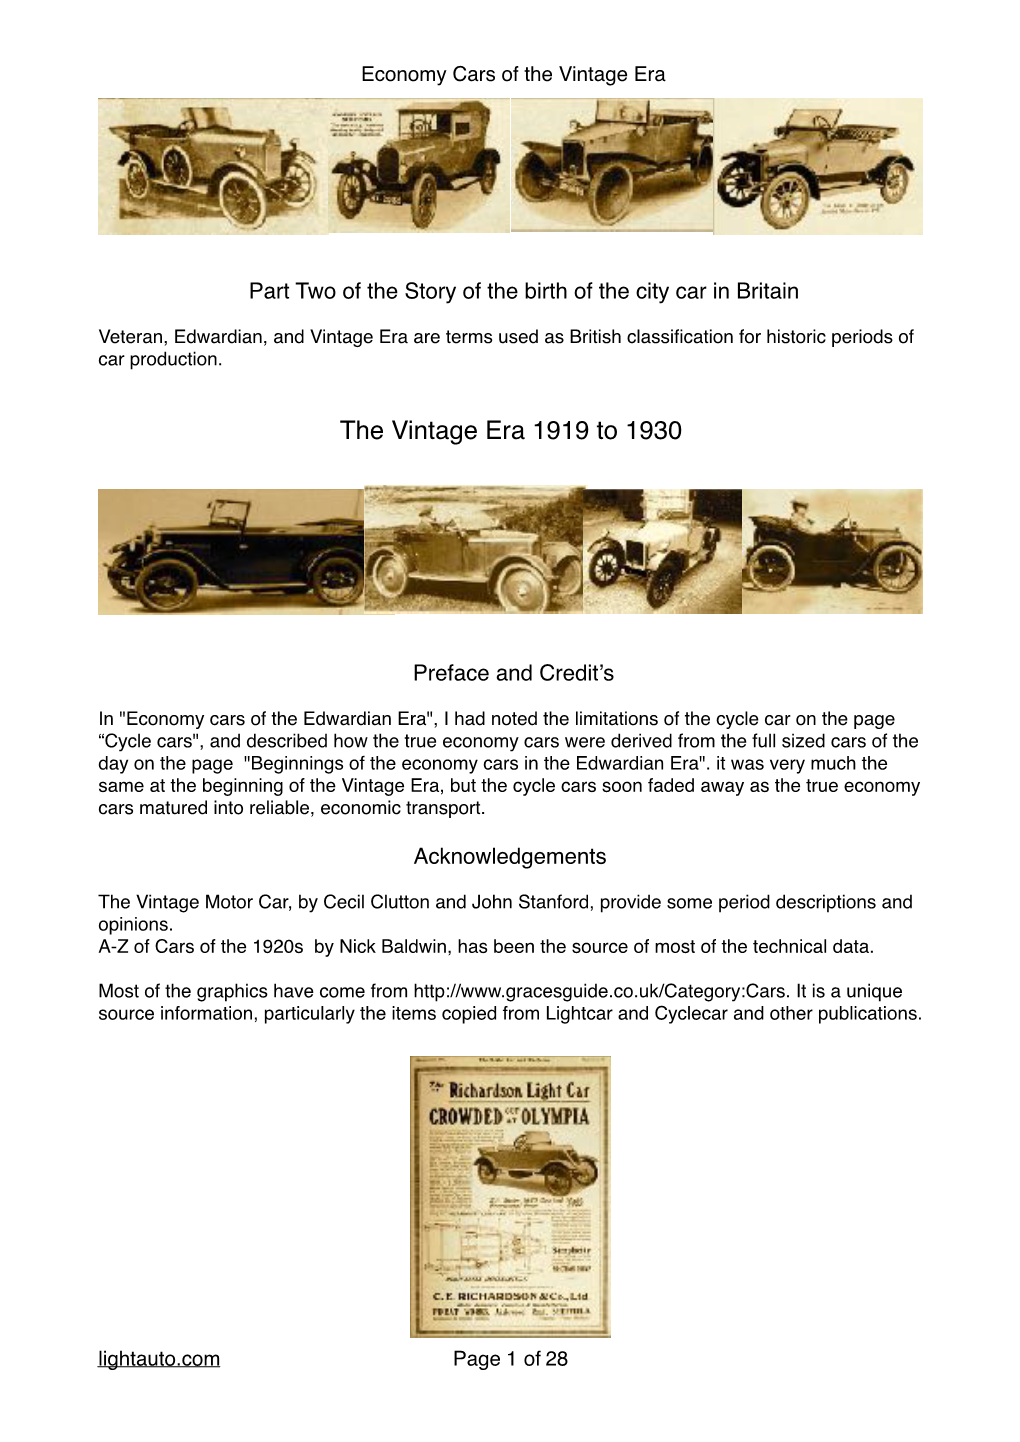 The Vintage Era 1919 to 1930